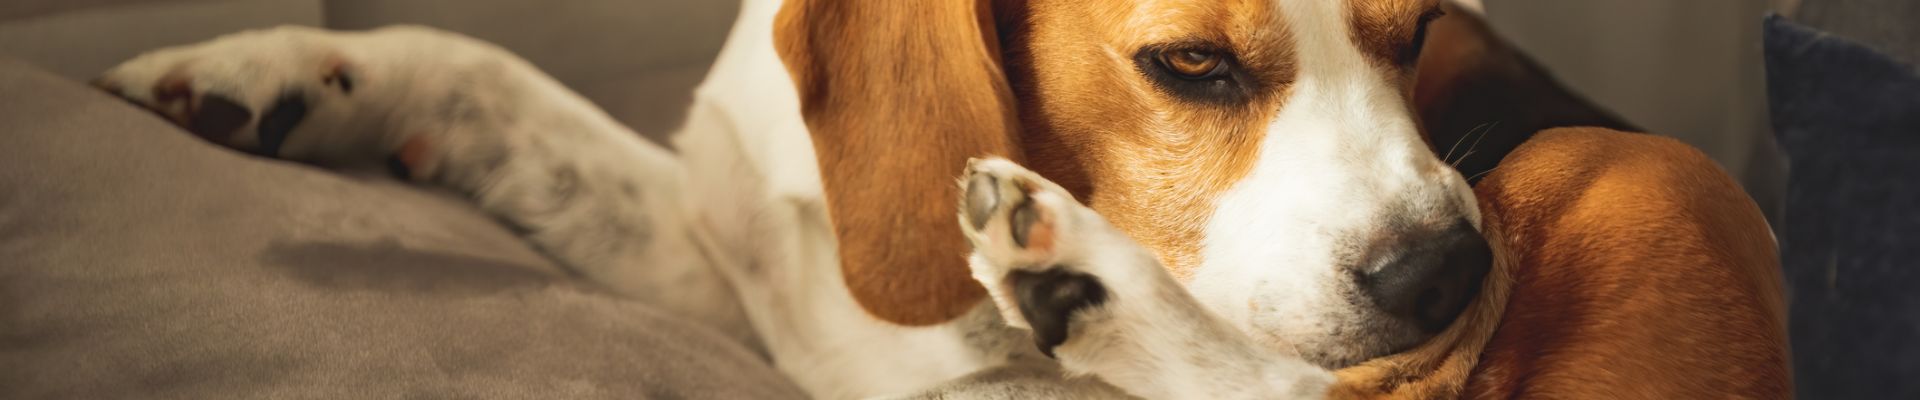 Un beagle que se rasca/se muerde la pata trasera